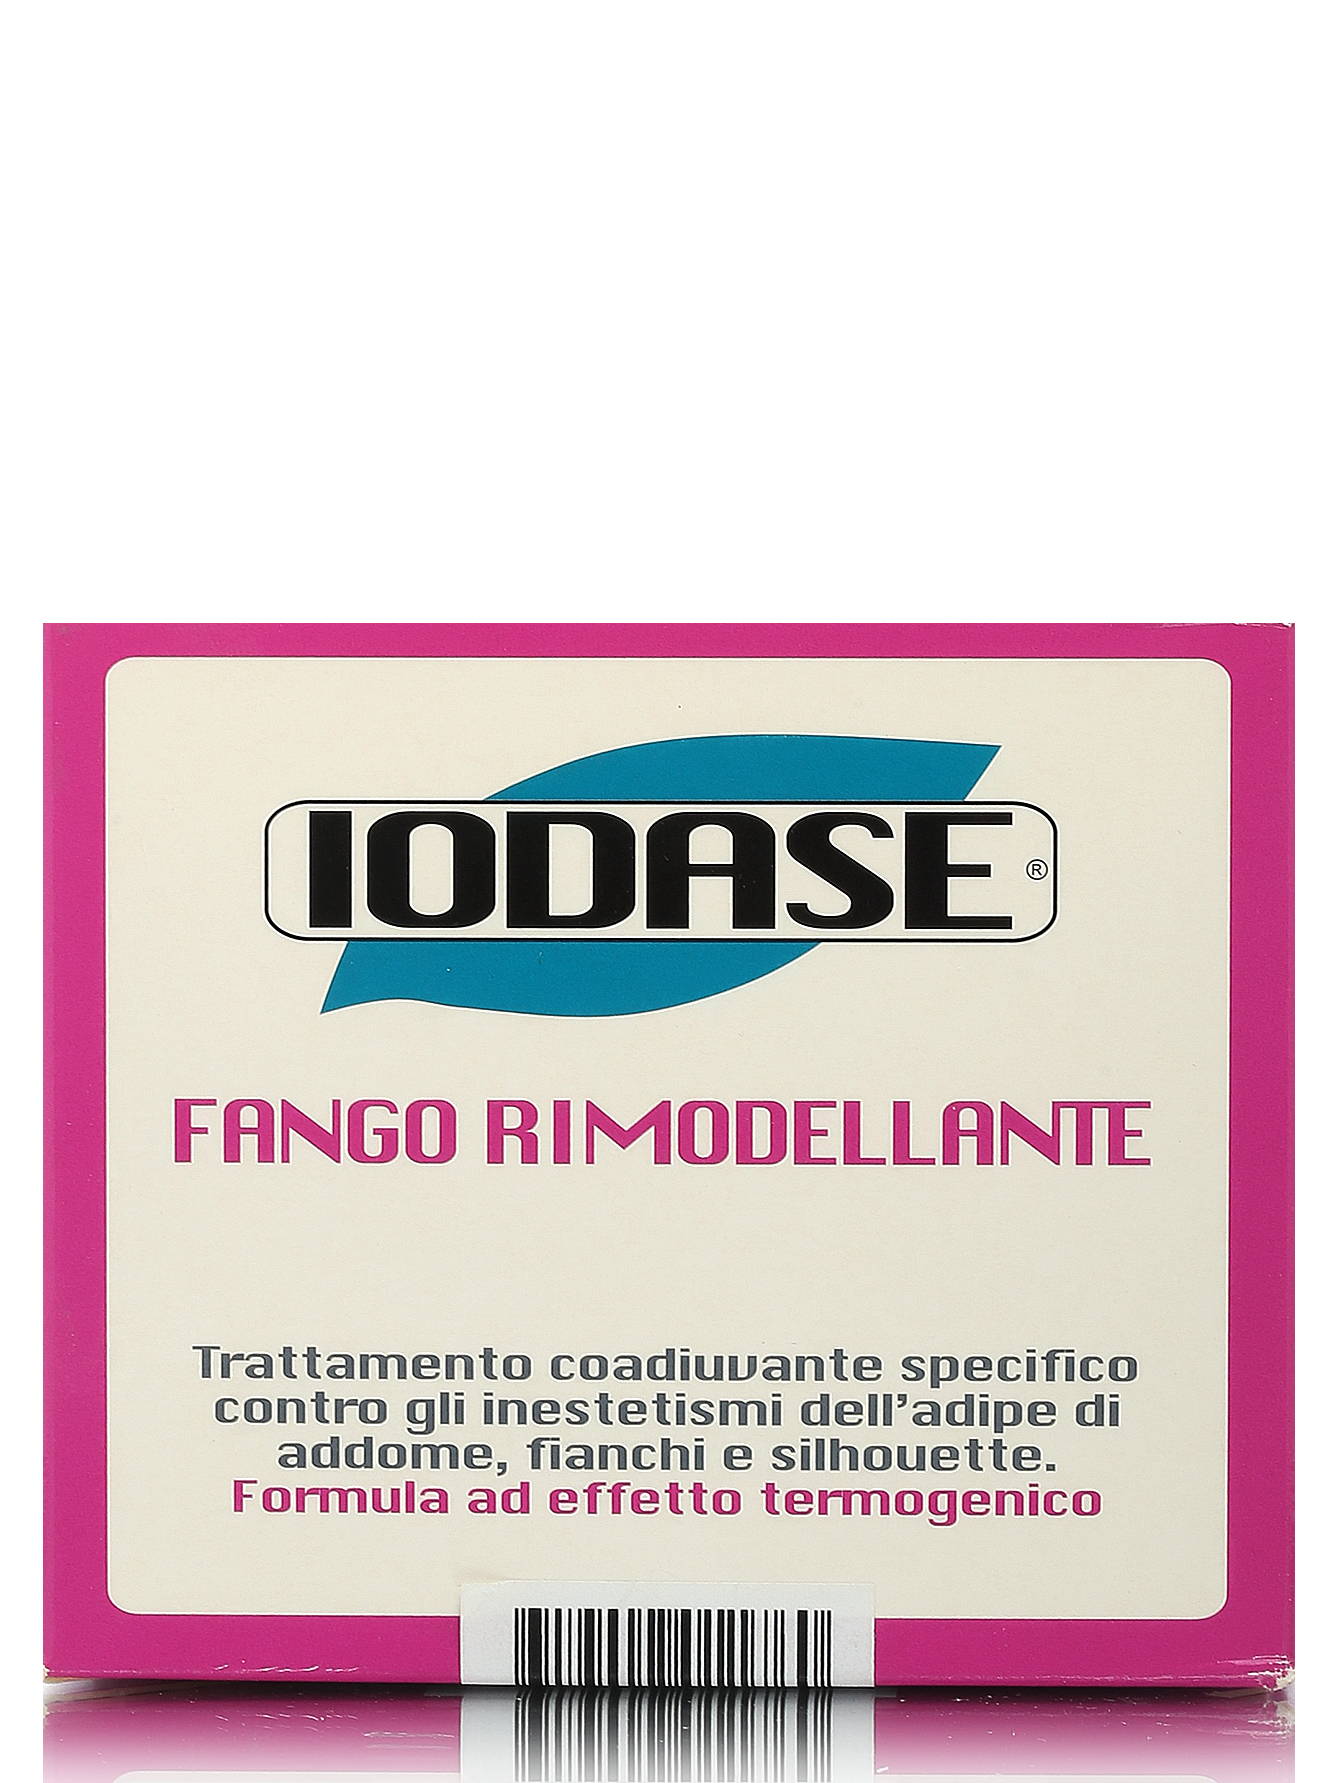  Грязь косметическая "IODASE FANGO RIMODELLANTE" - Body Care - Модель Верх-Низ